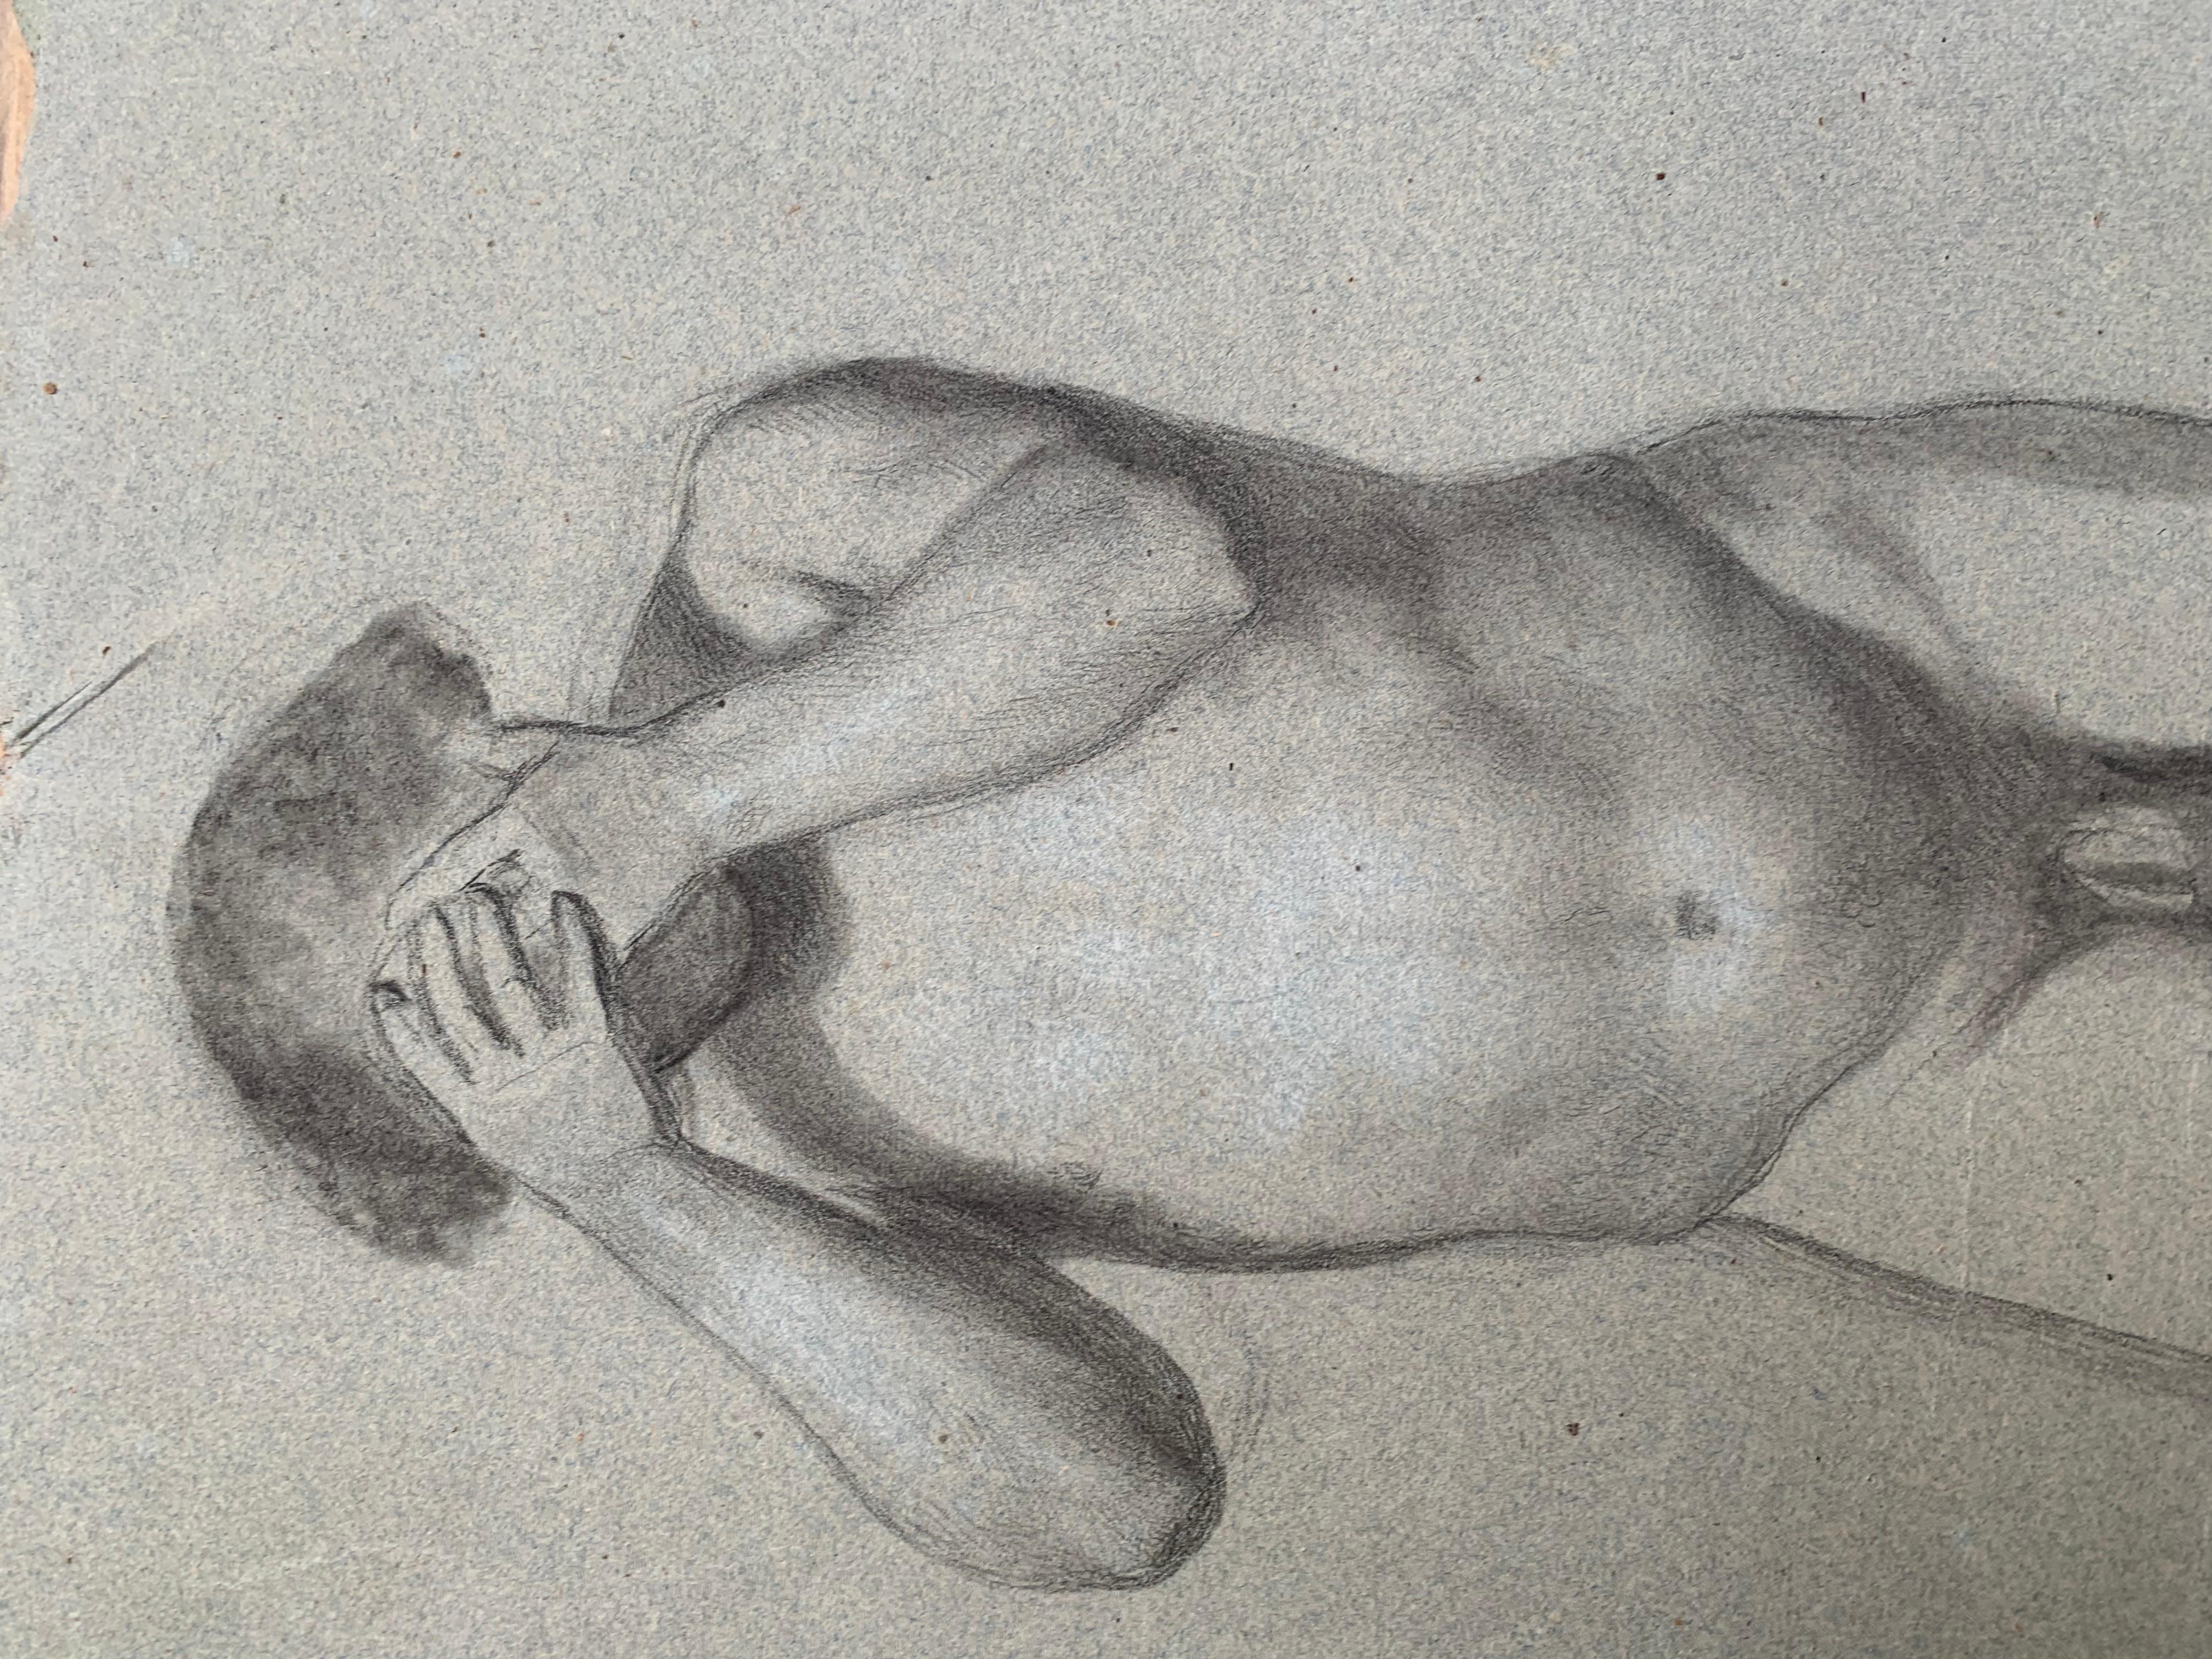 Vorbereitende anatomische Studie für die Figur eines Mannes mit Händen im Gesicht.
Zeichnung eines mittelgroßen männlichen Aktes.
Aus dem 19. Jahrhundert
Zeichnung auf leicht gräulich gefärbtem Papier.
In gutem Zustand. Unregelmäßige Ränder mit